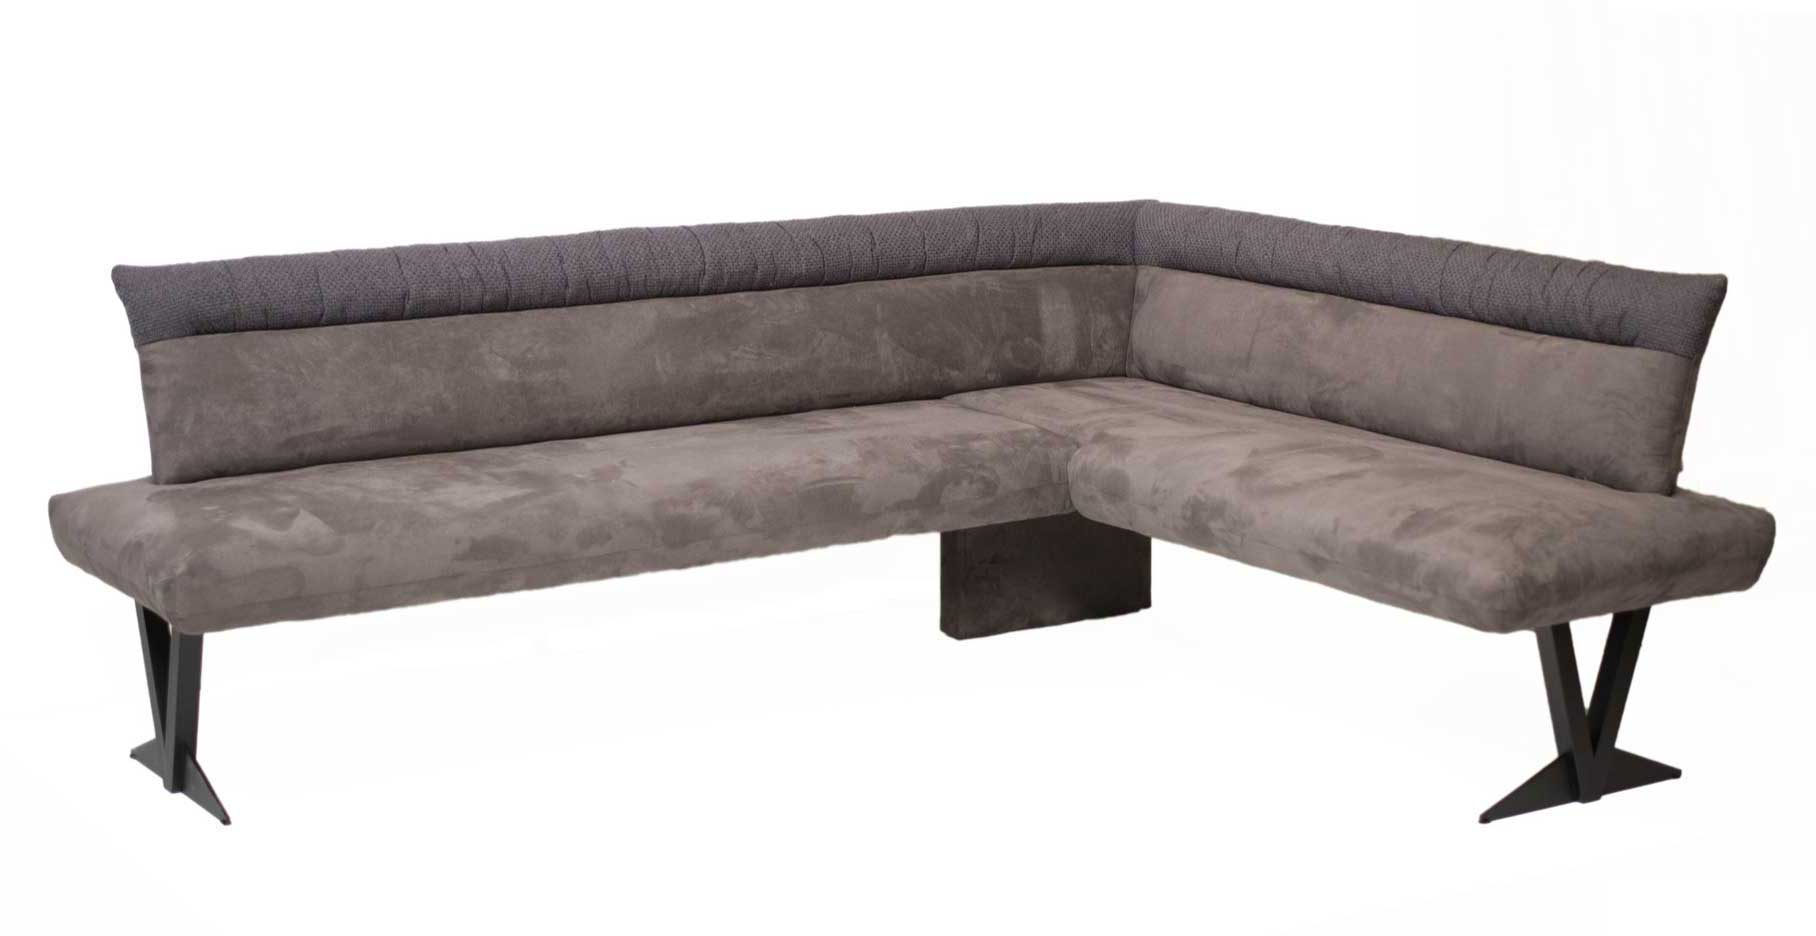 Standard Furniture Grenoble moderne Eckbank mit Metallgestell schwarz